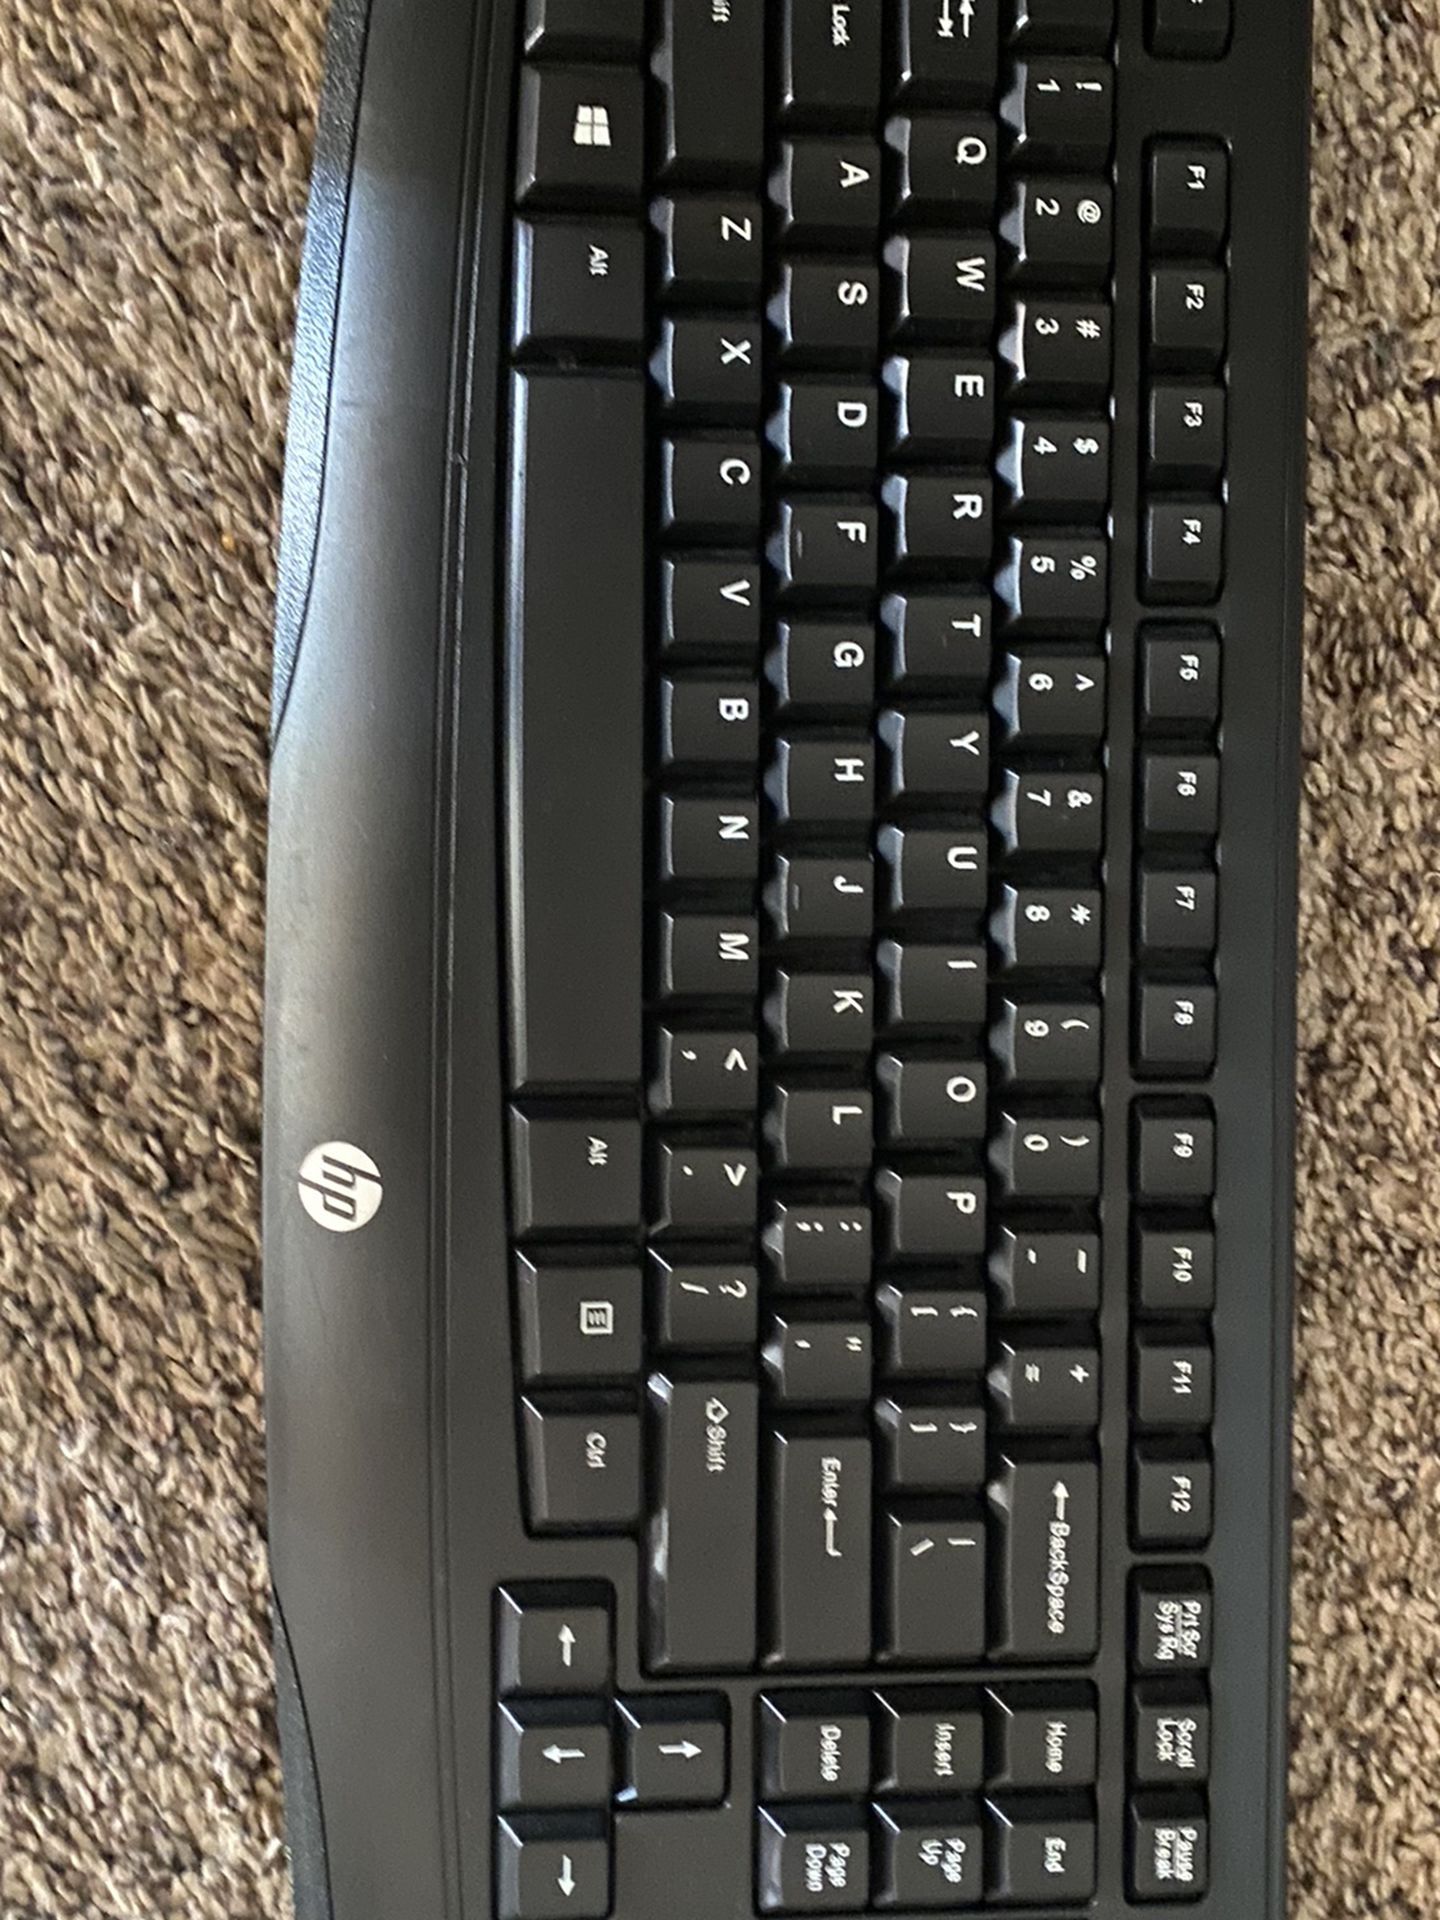 HP wireless Keyboard